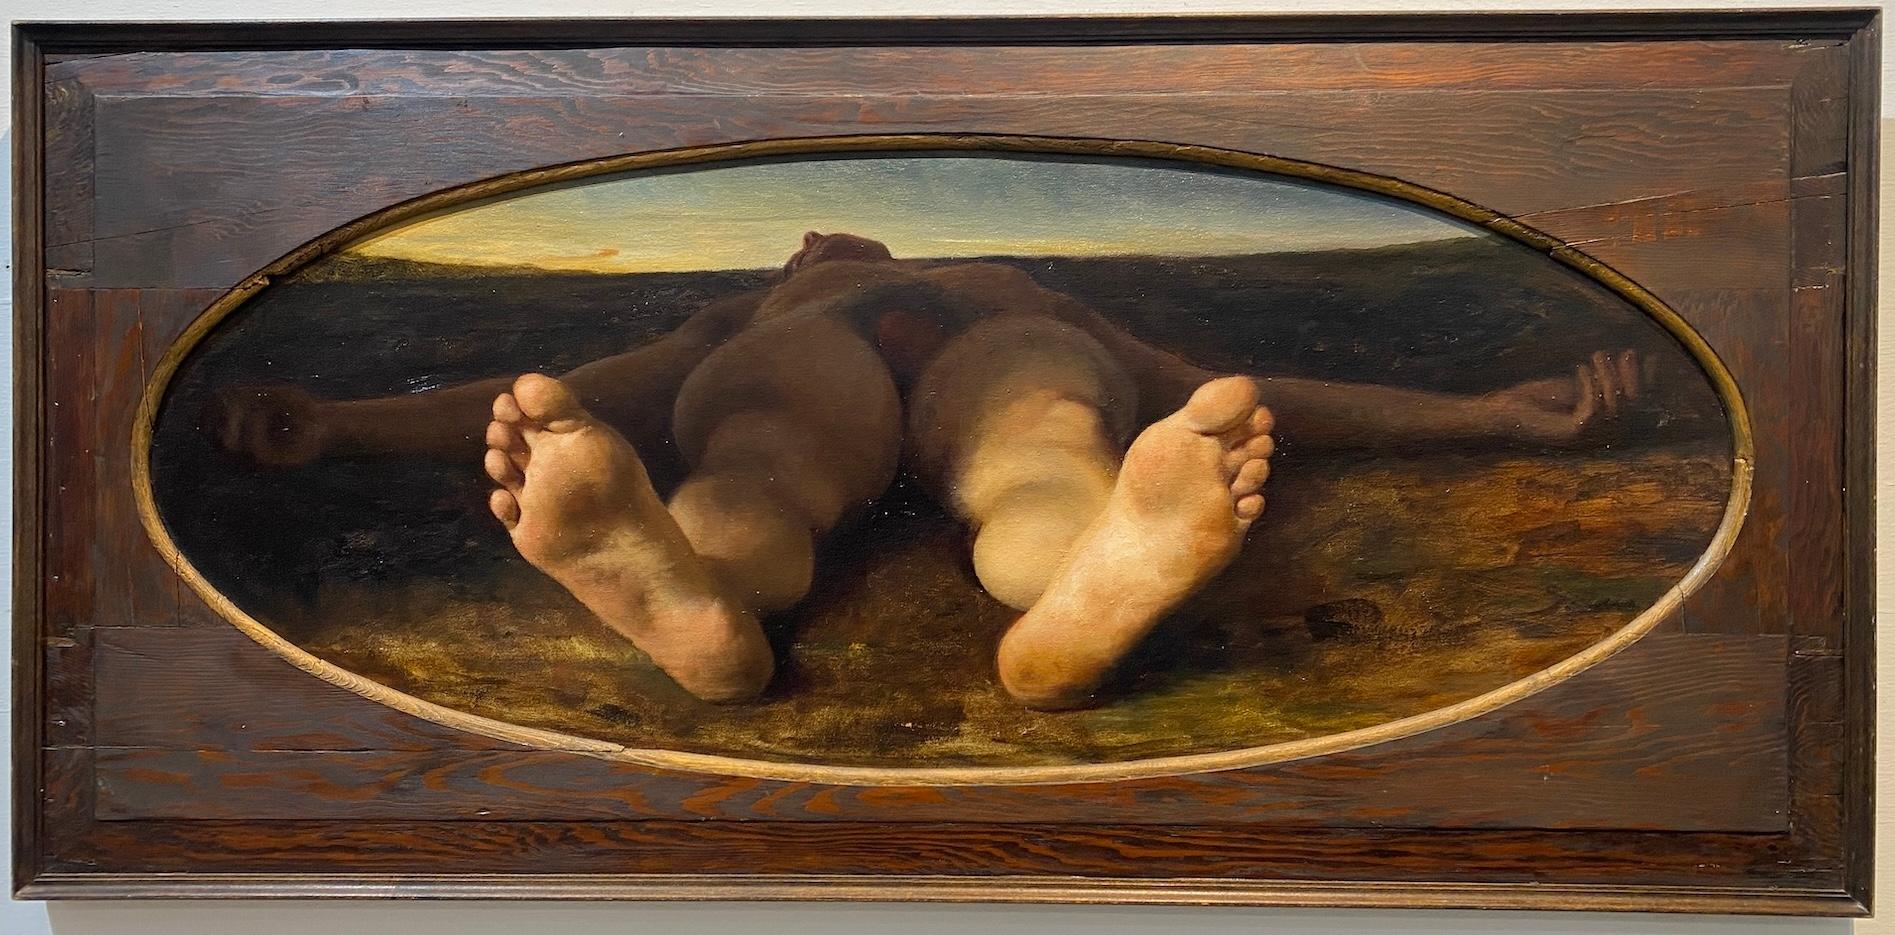 Anthony Ackrill Nude Painting – "Skylover" zeitgenössischer realistischer männlicher Akt Perspektive Ölgemälde